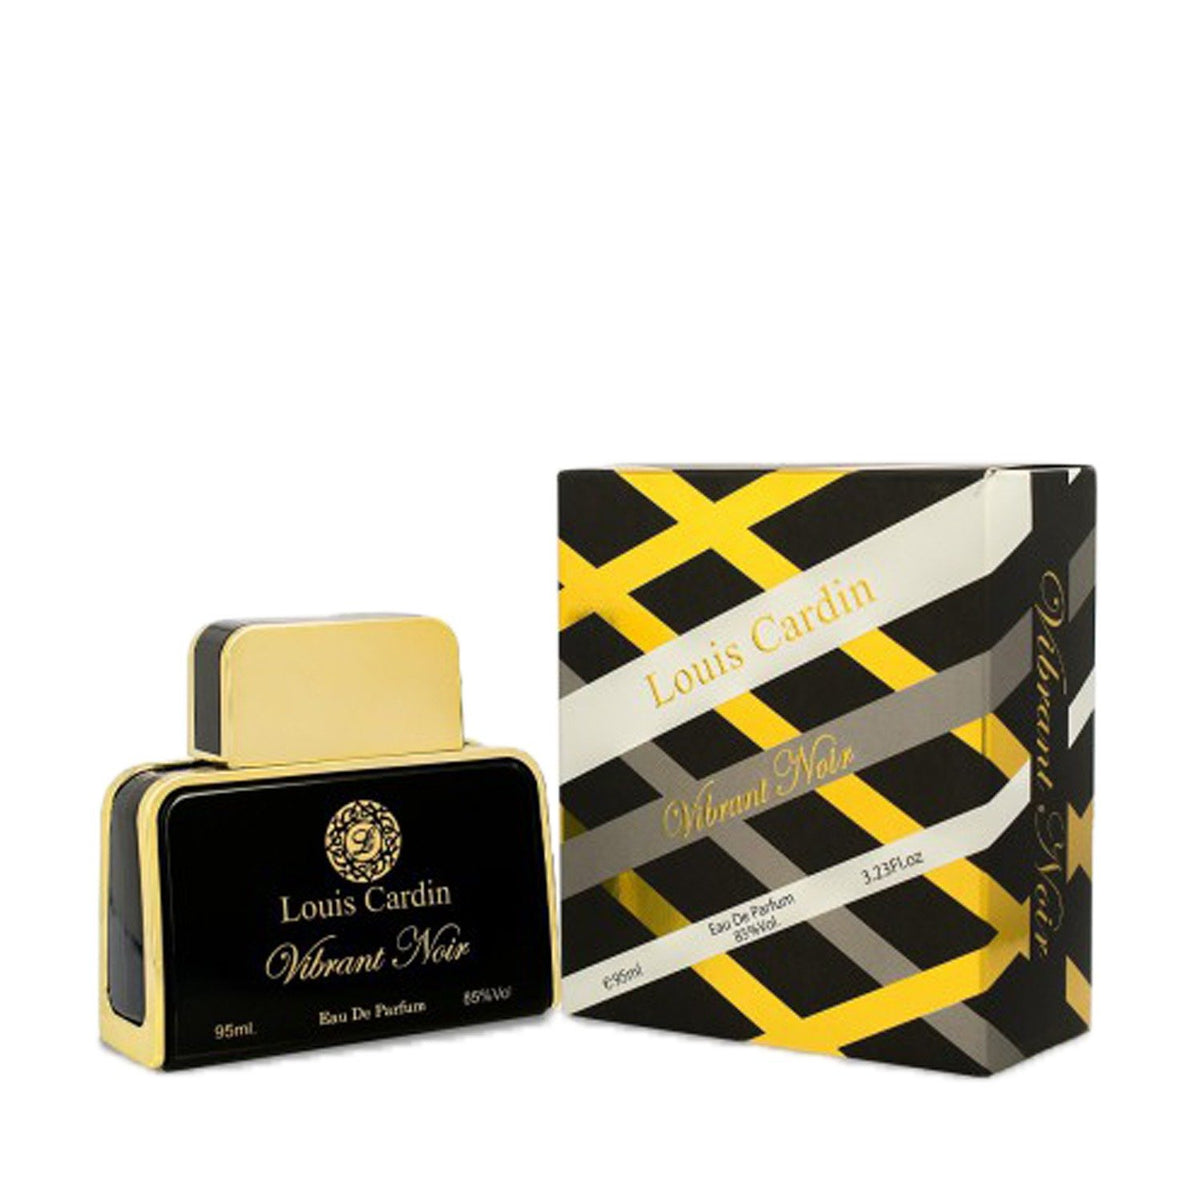 Louis Cardin Noir Vibrant - Best Men and Women Perfume Cologne Oud Scent